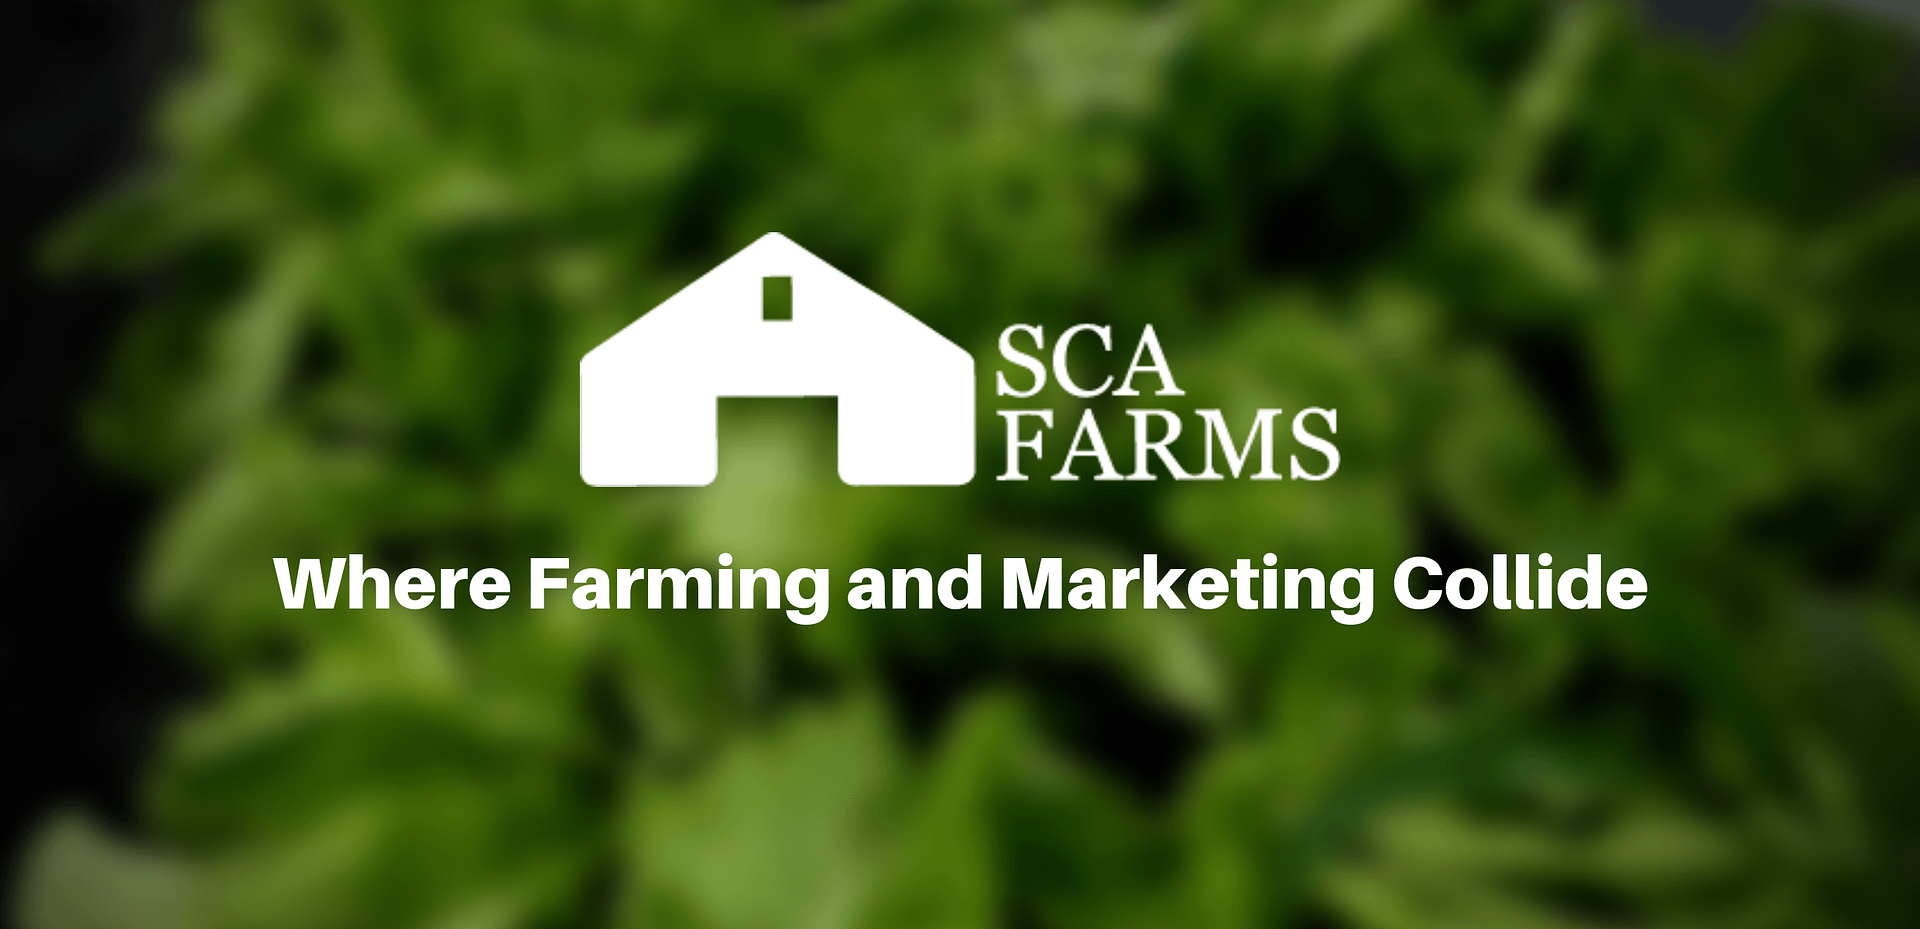 SCA Farms Image_bg